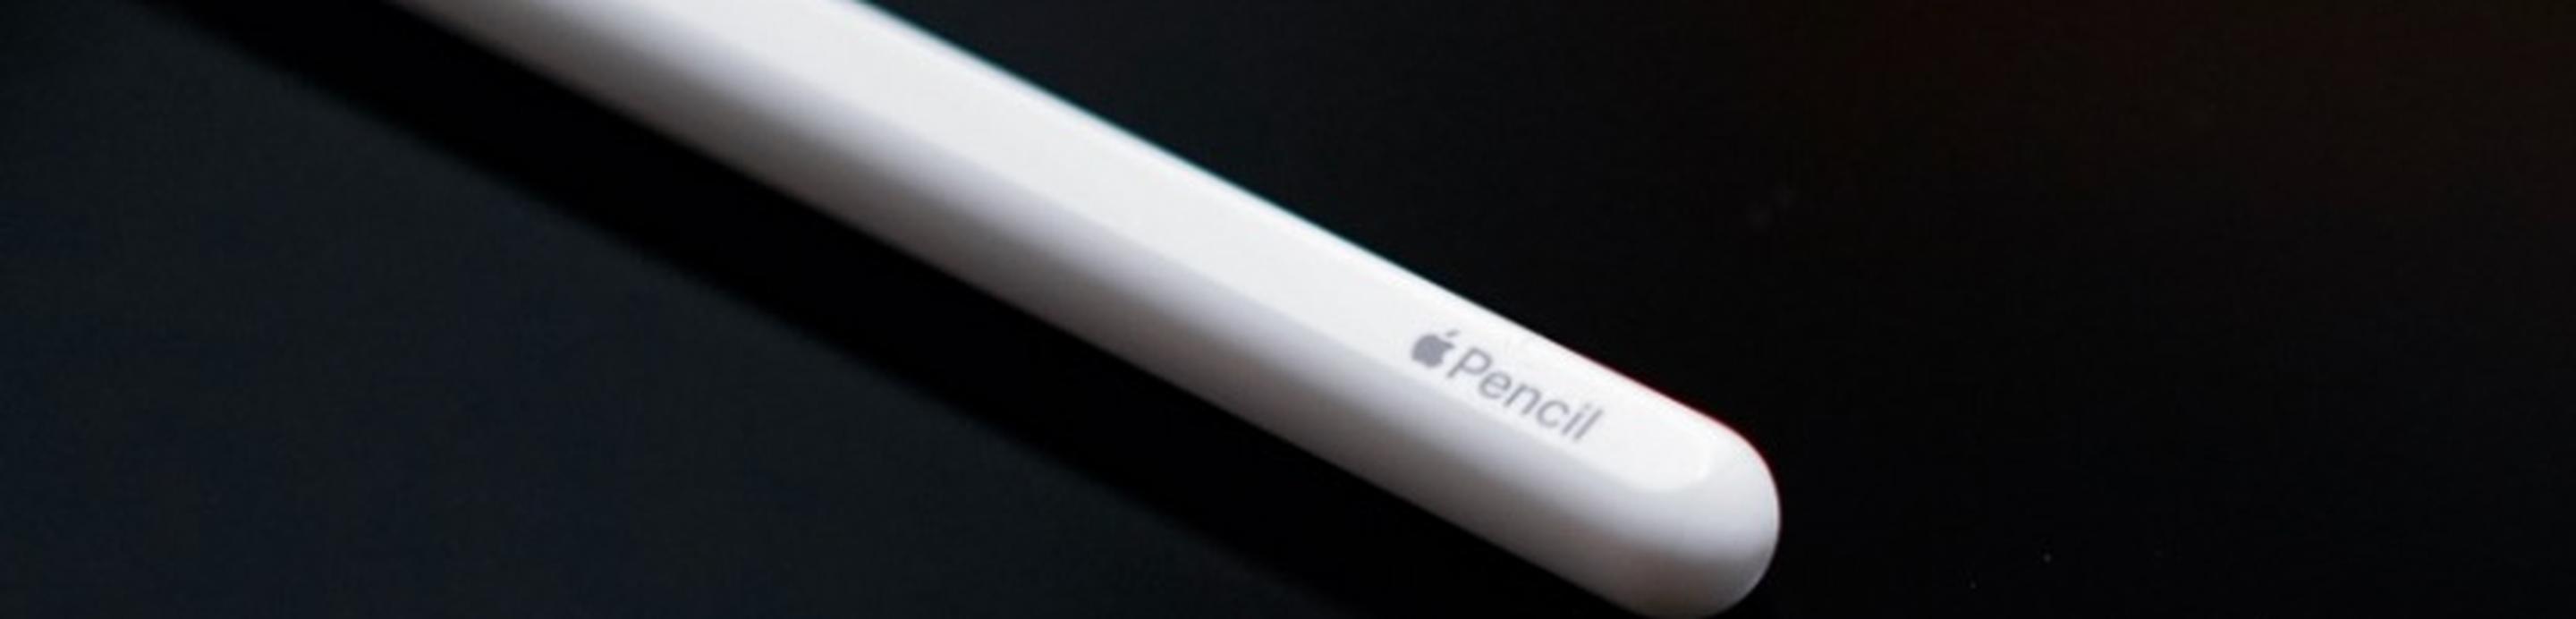 Apple Pencil für ipad